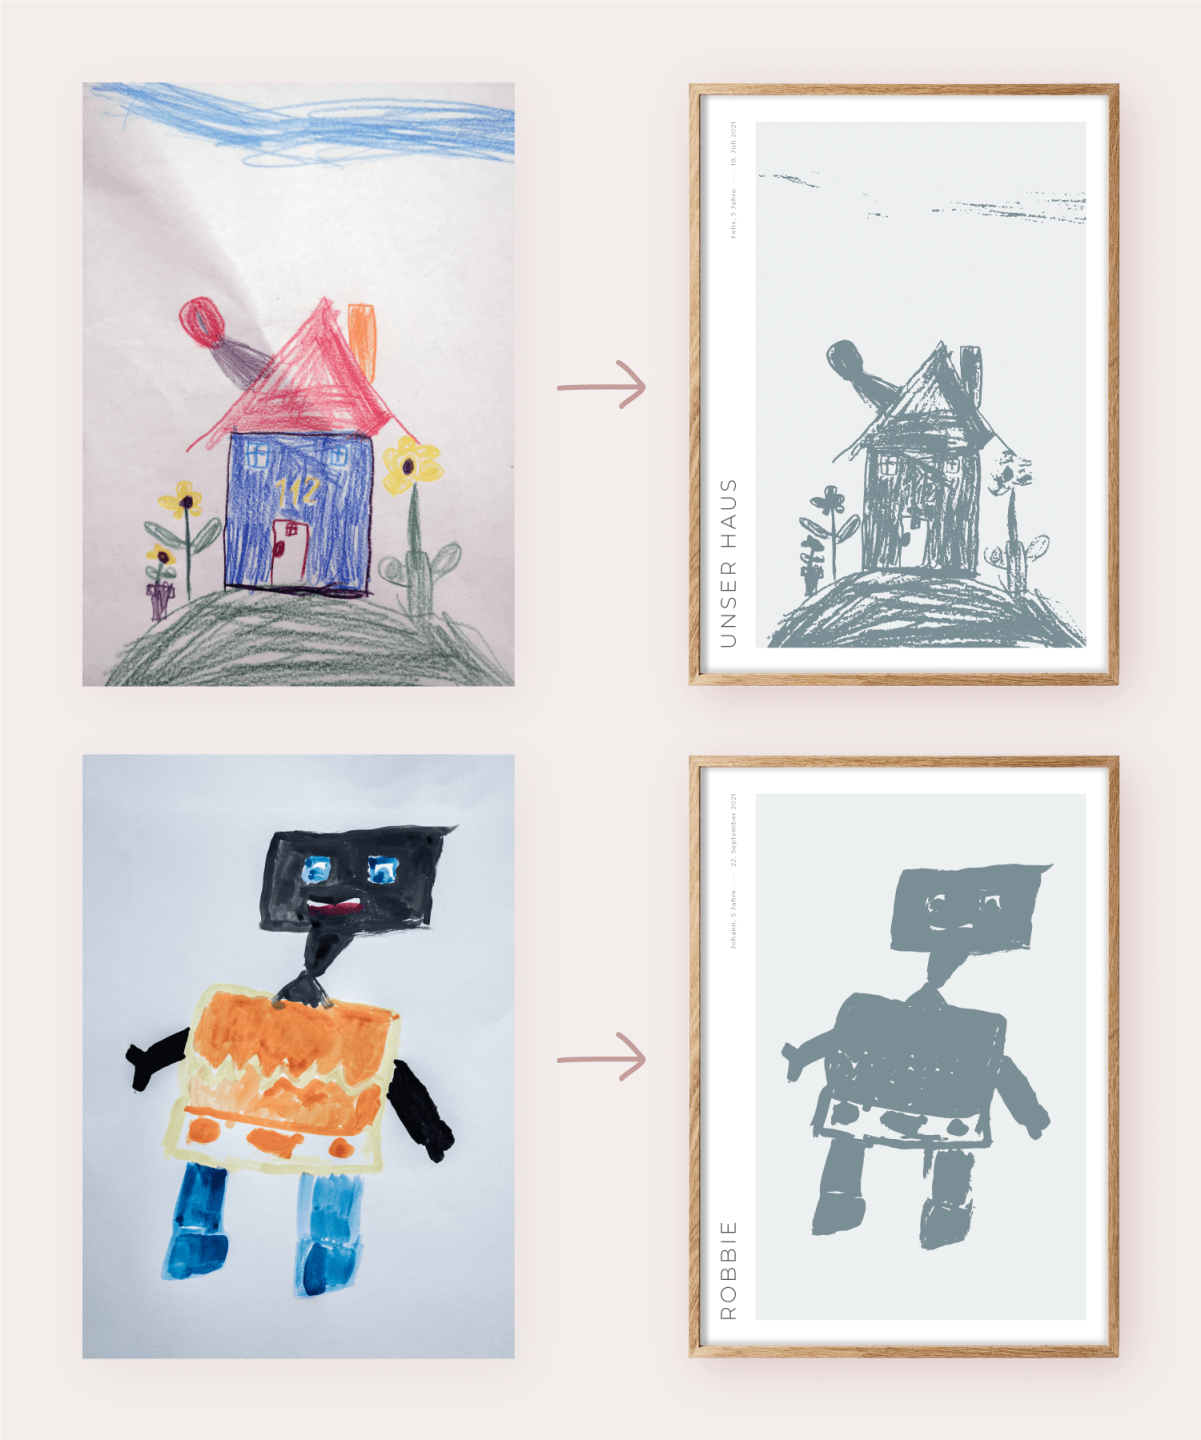 Fotos einer Kinderzeichnung, links mit Schatten, rechts ohne